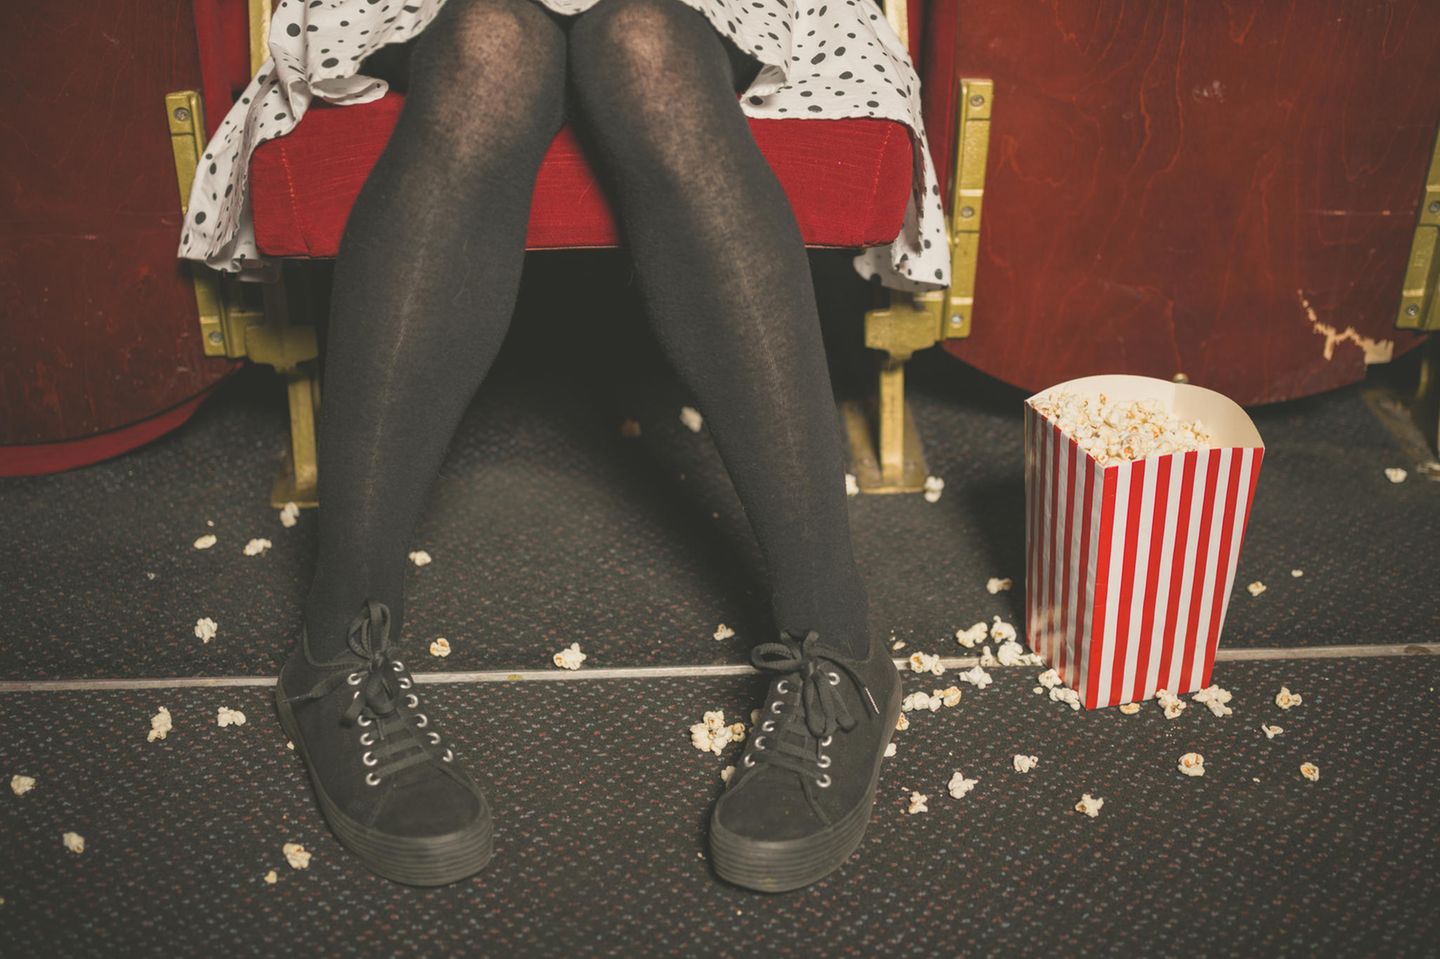 Womit nervt man andere, ohne es zu merken? Eine Frau krümelt im Kino alles mit Popcorn voll